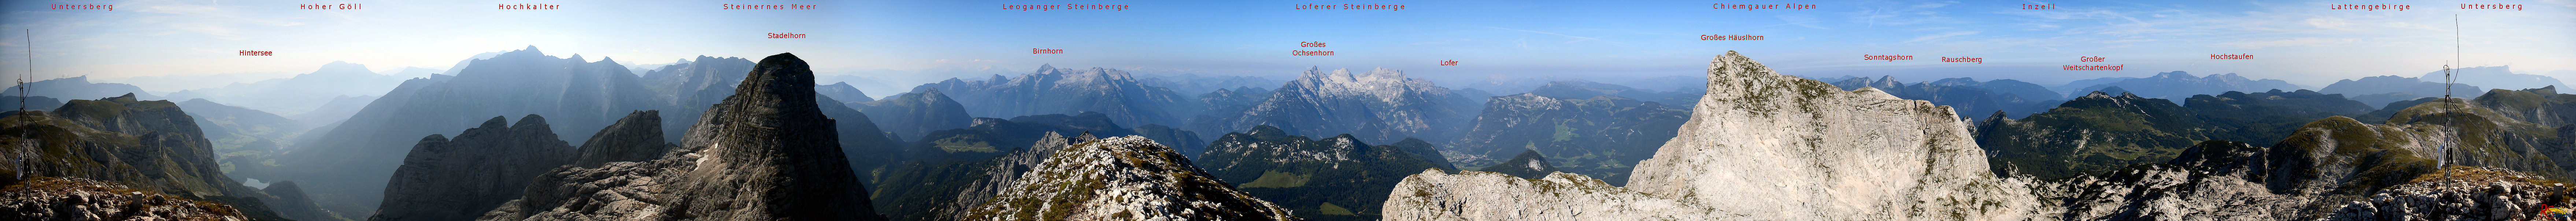 Wanderung Reiter Alpe Reiter Alm in den Berchtesgadener Alpen: 360 Grad Panorama am Gipfel des Wagendrischelhornes 